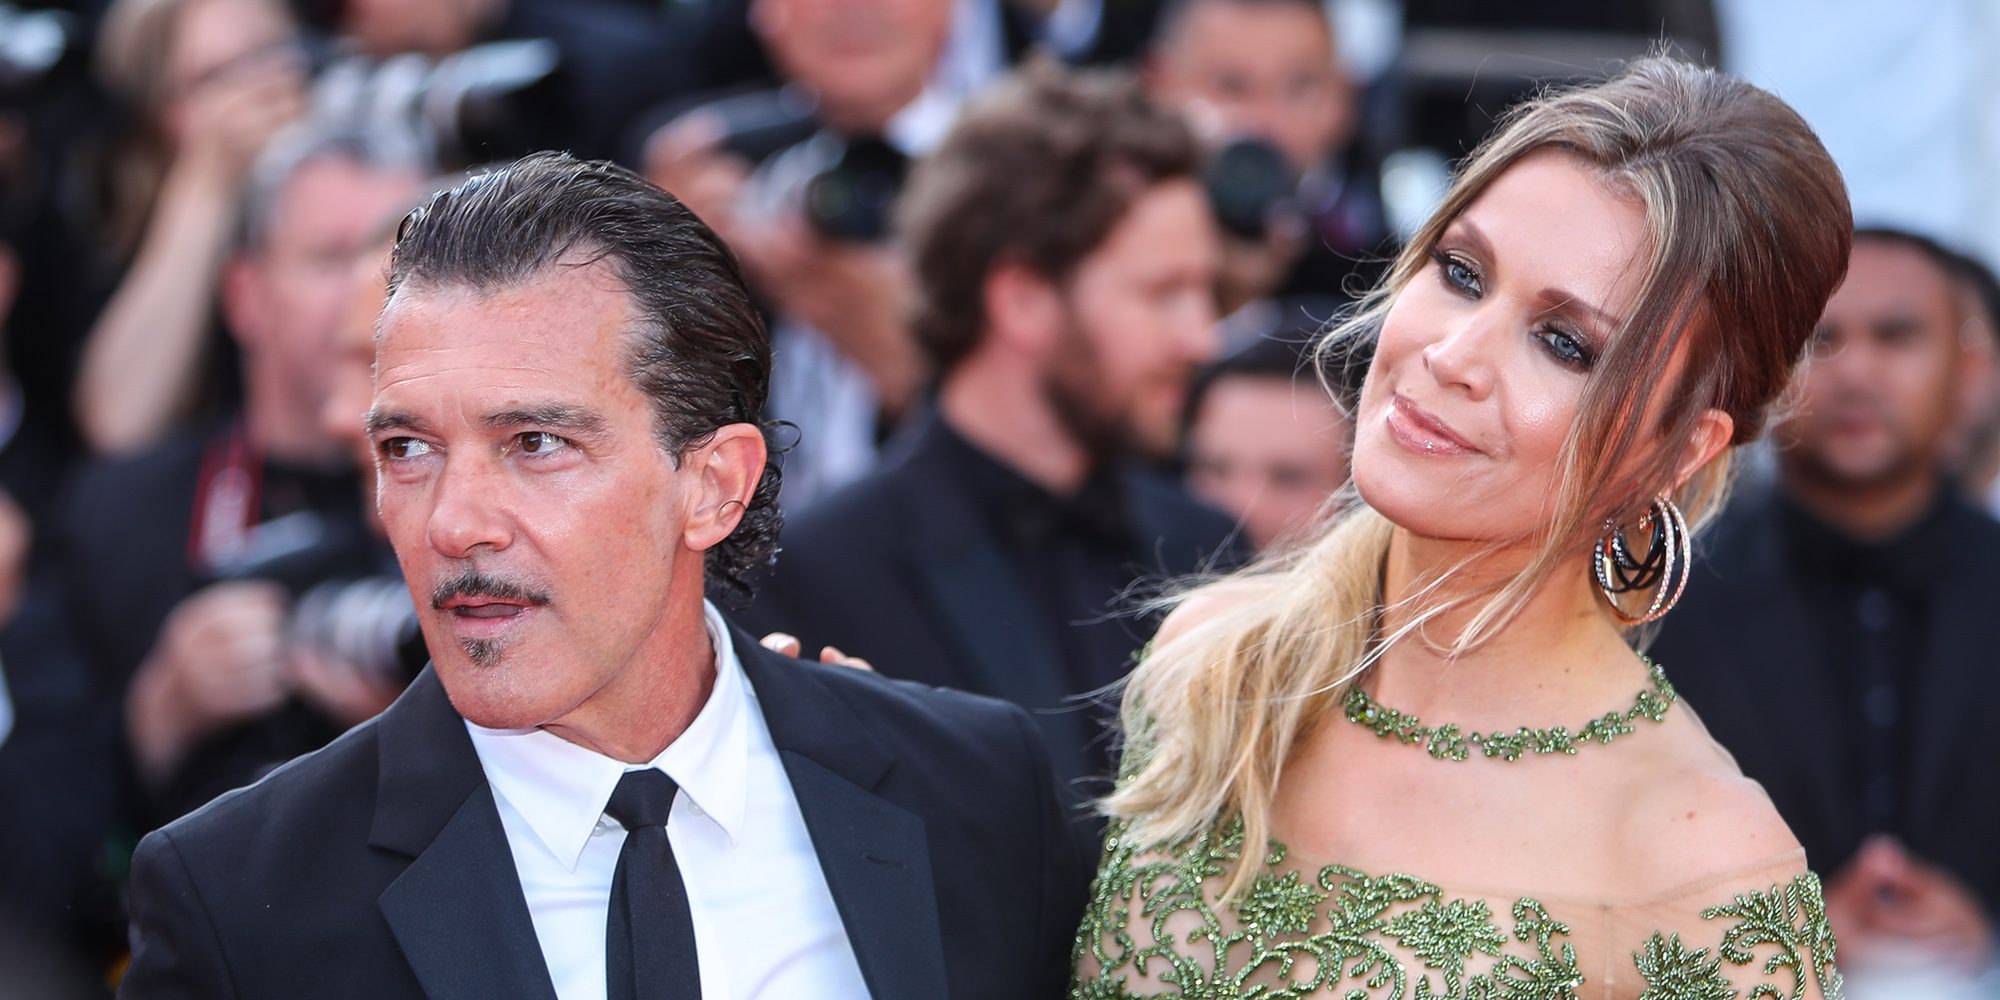 Antonio Banderas y Nicole Kimpel derrochan amor y ternura en el Festival de Cannes 2017